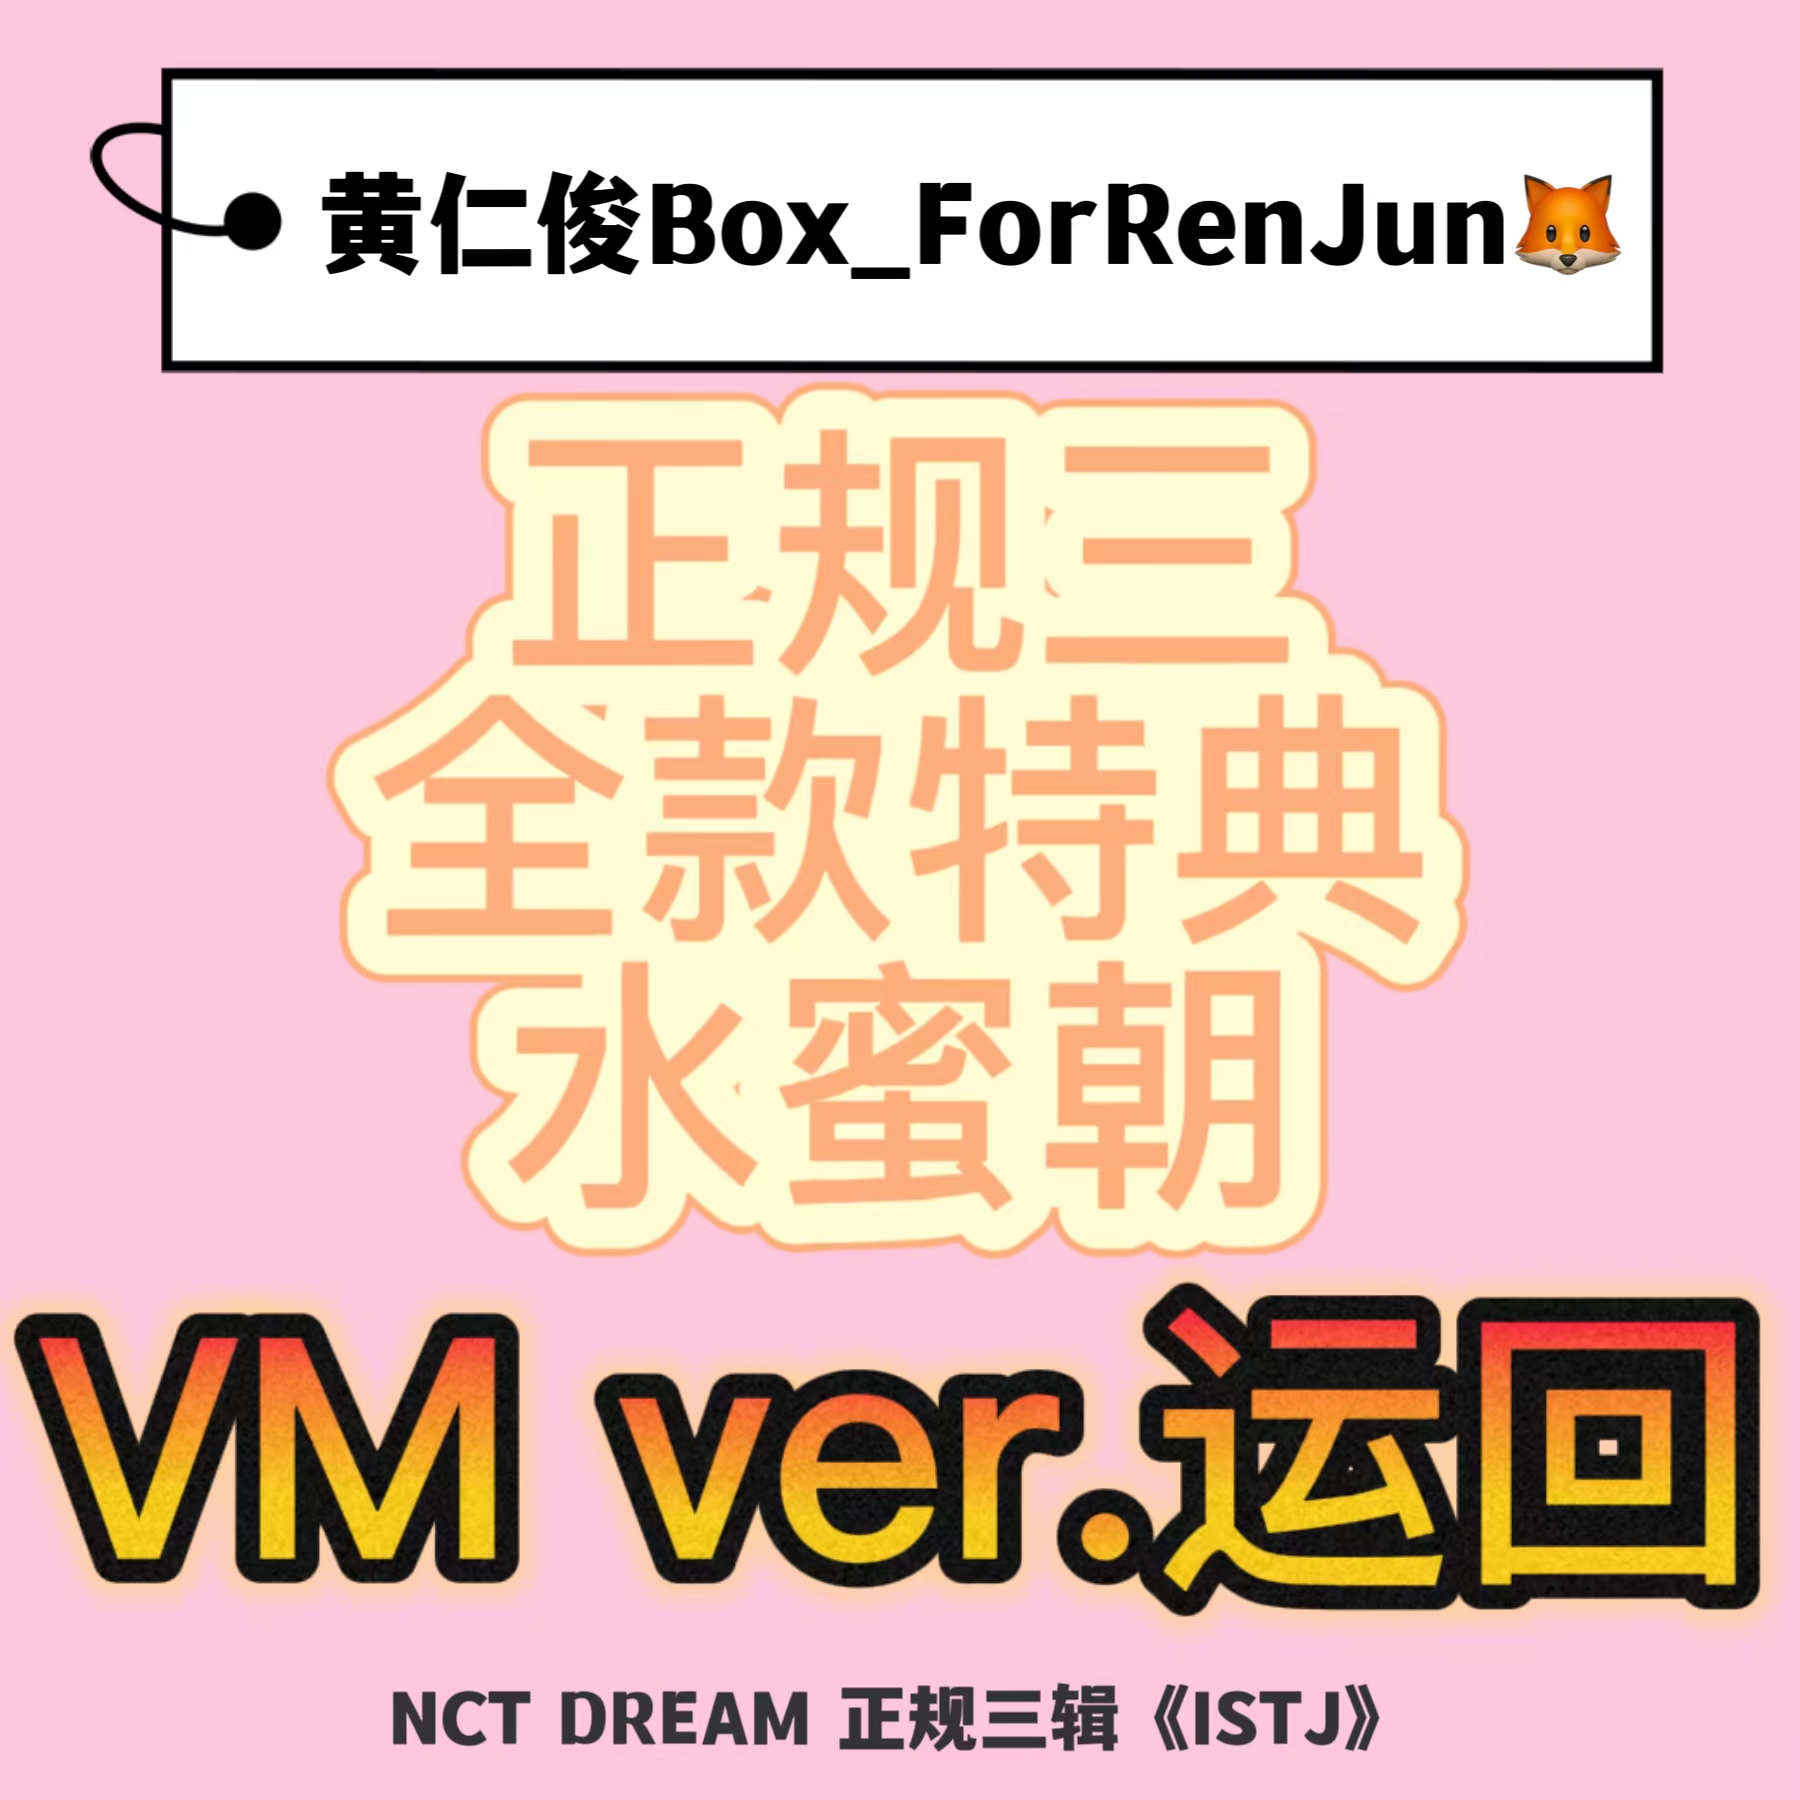 [全款 水蜜朝 特典专] NCT DREAM - 正规3辑 [ISTJ] (Vending Machine Ver.)_黄仁俊吧RenJunBar